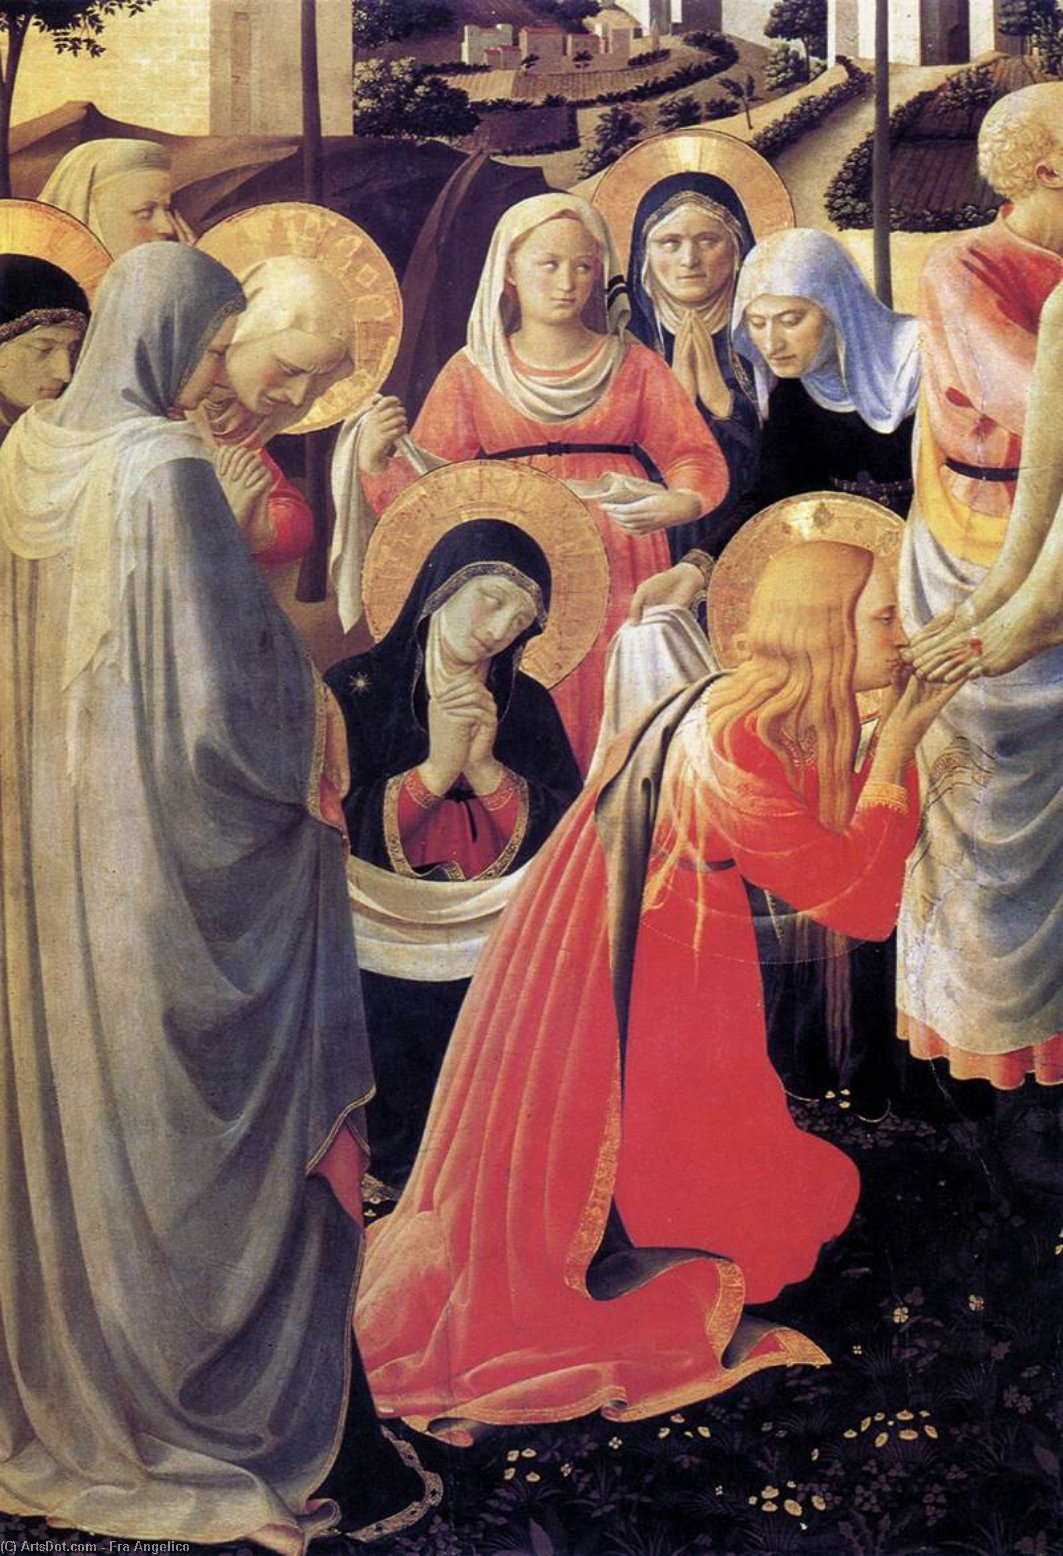 WikiOO.org - אנציקלופדיה לאמנויות יפות - ציור, יצירות אמנות Fra Angelico - Deposition from the Cross (detail)